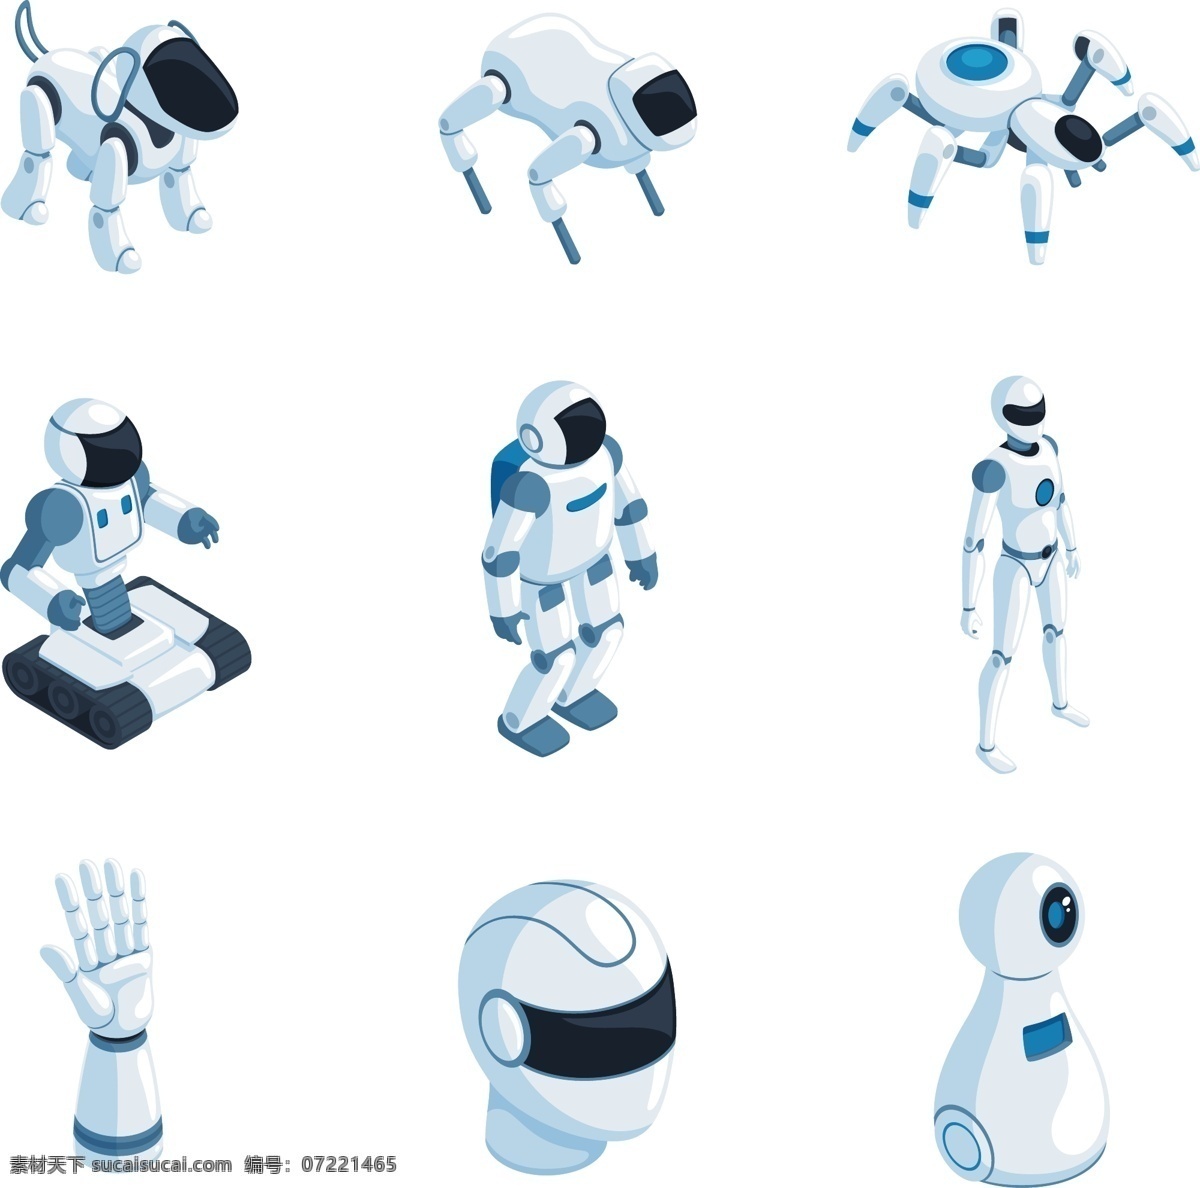 d 人工智能 机器人 系列 科技感 高科技 未来感 2.5d 仿生机器人